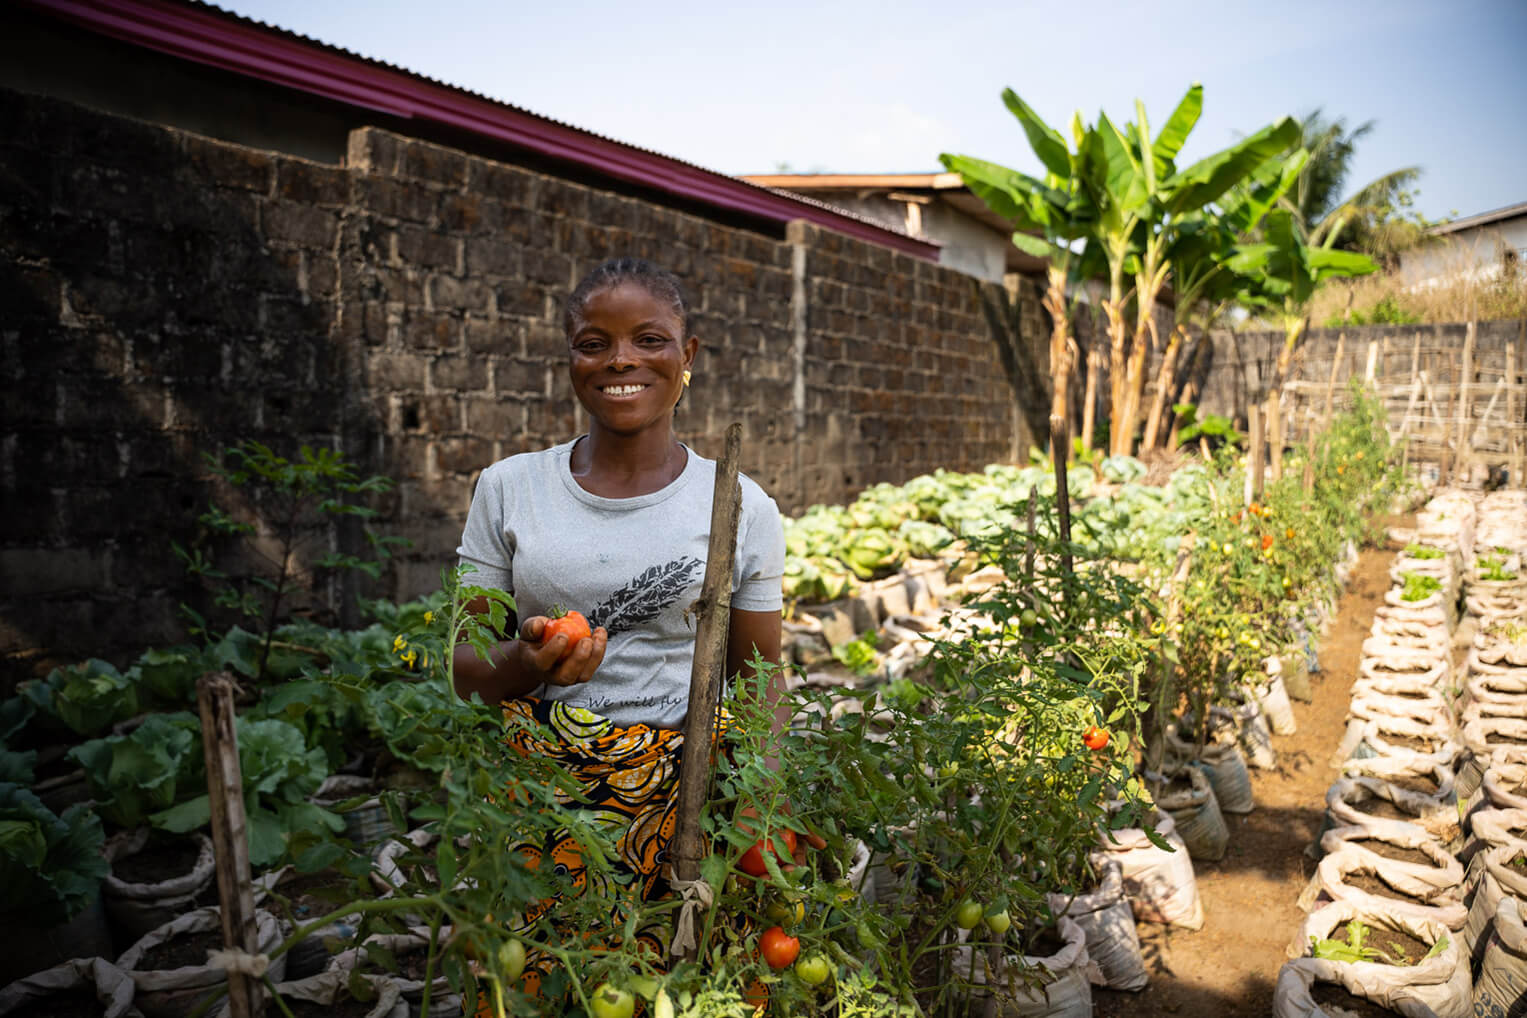 Marthaline, otra participante del Proyecto Edén, se ha entusiasmado mucho con aprender mejores prácticas agrícolas. Aquí está celebrando las cosechas de tomates y de pelotas amargas.